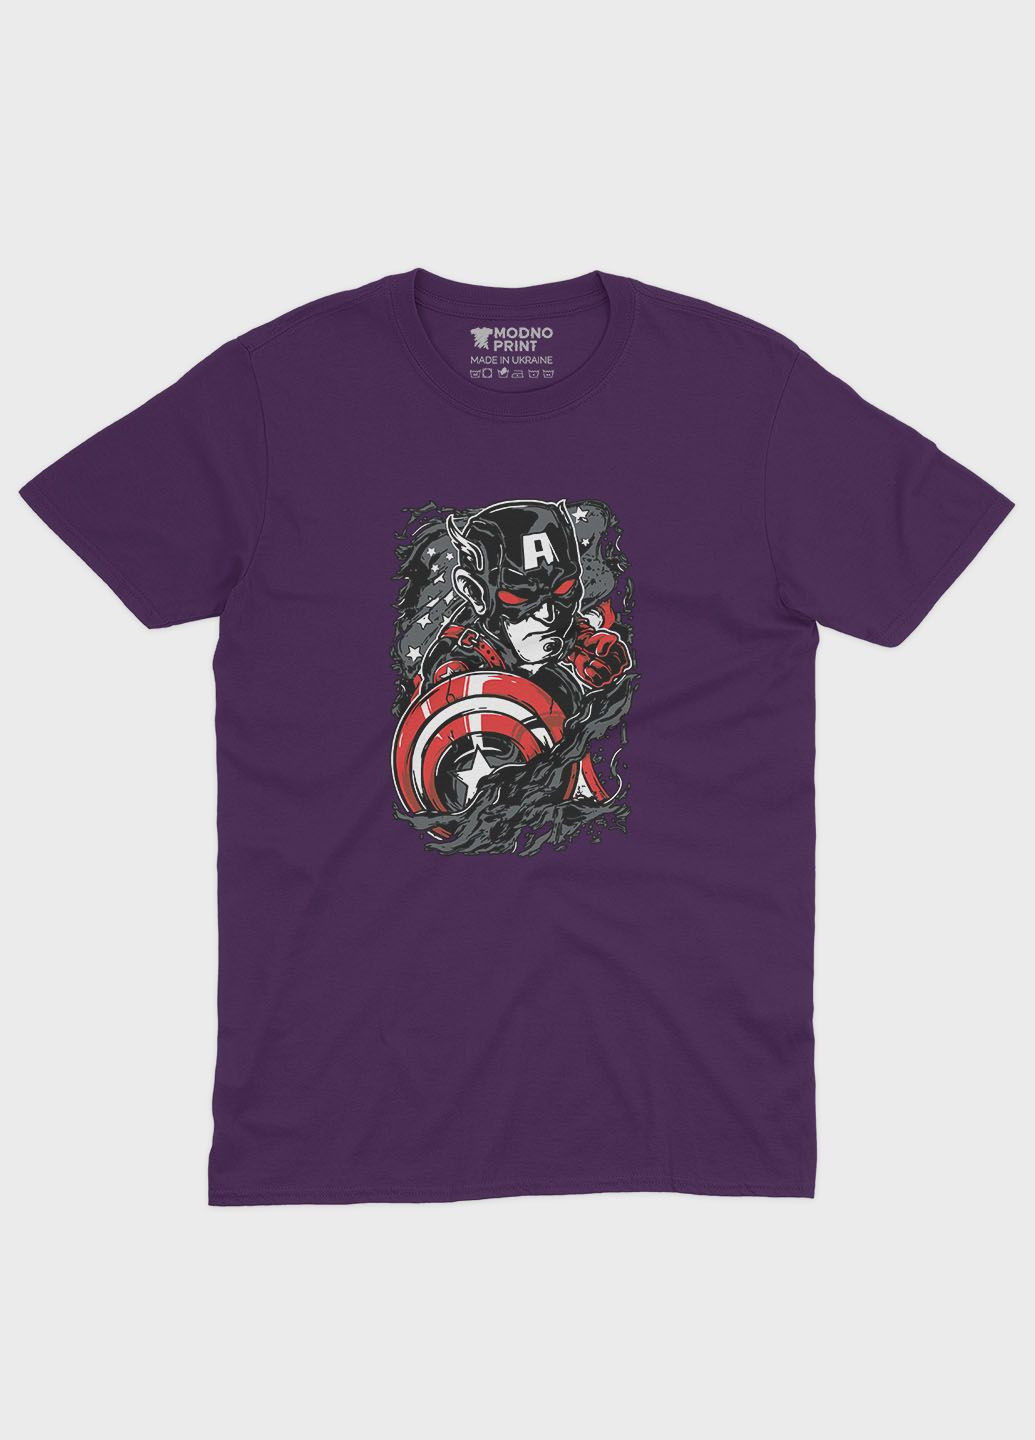 Фиолетовая демисезонная футболка для мальчика с принтом супергероя - капитан америка (ts001-1-dby-006-022-013-b) Modno